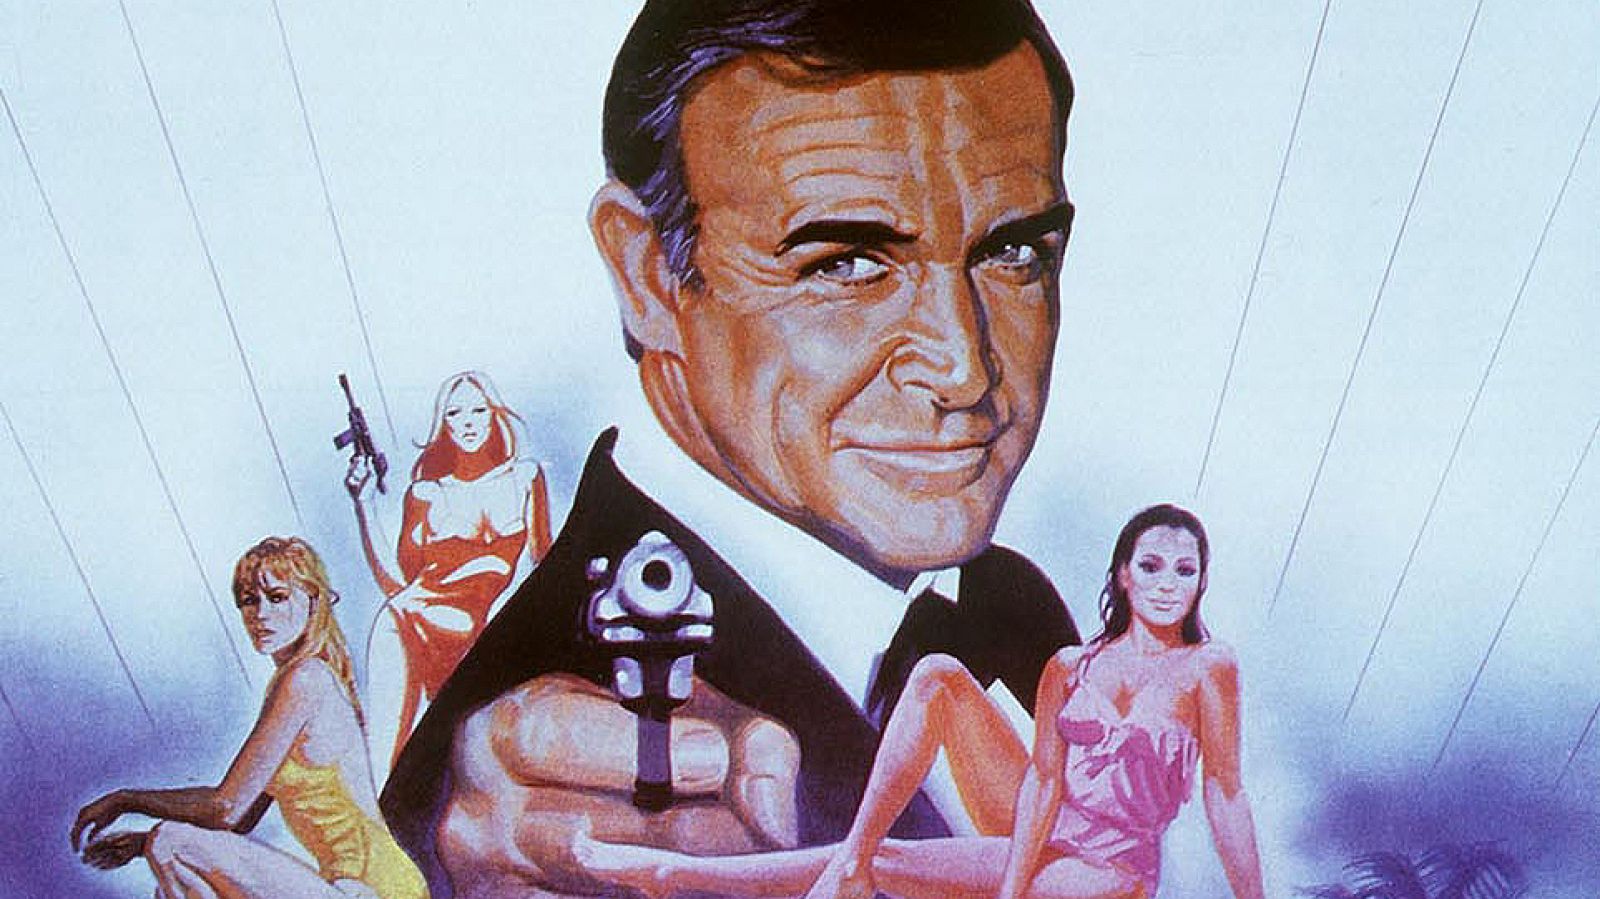 Homenaje a Sean Connery y a su James Bond, mítico espía